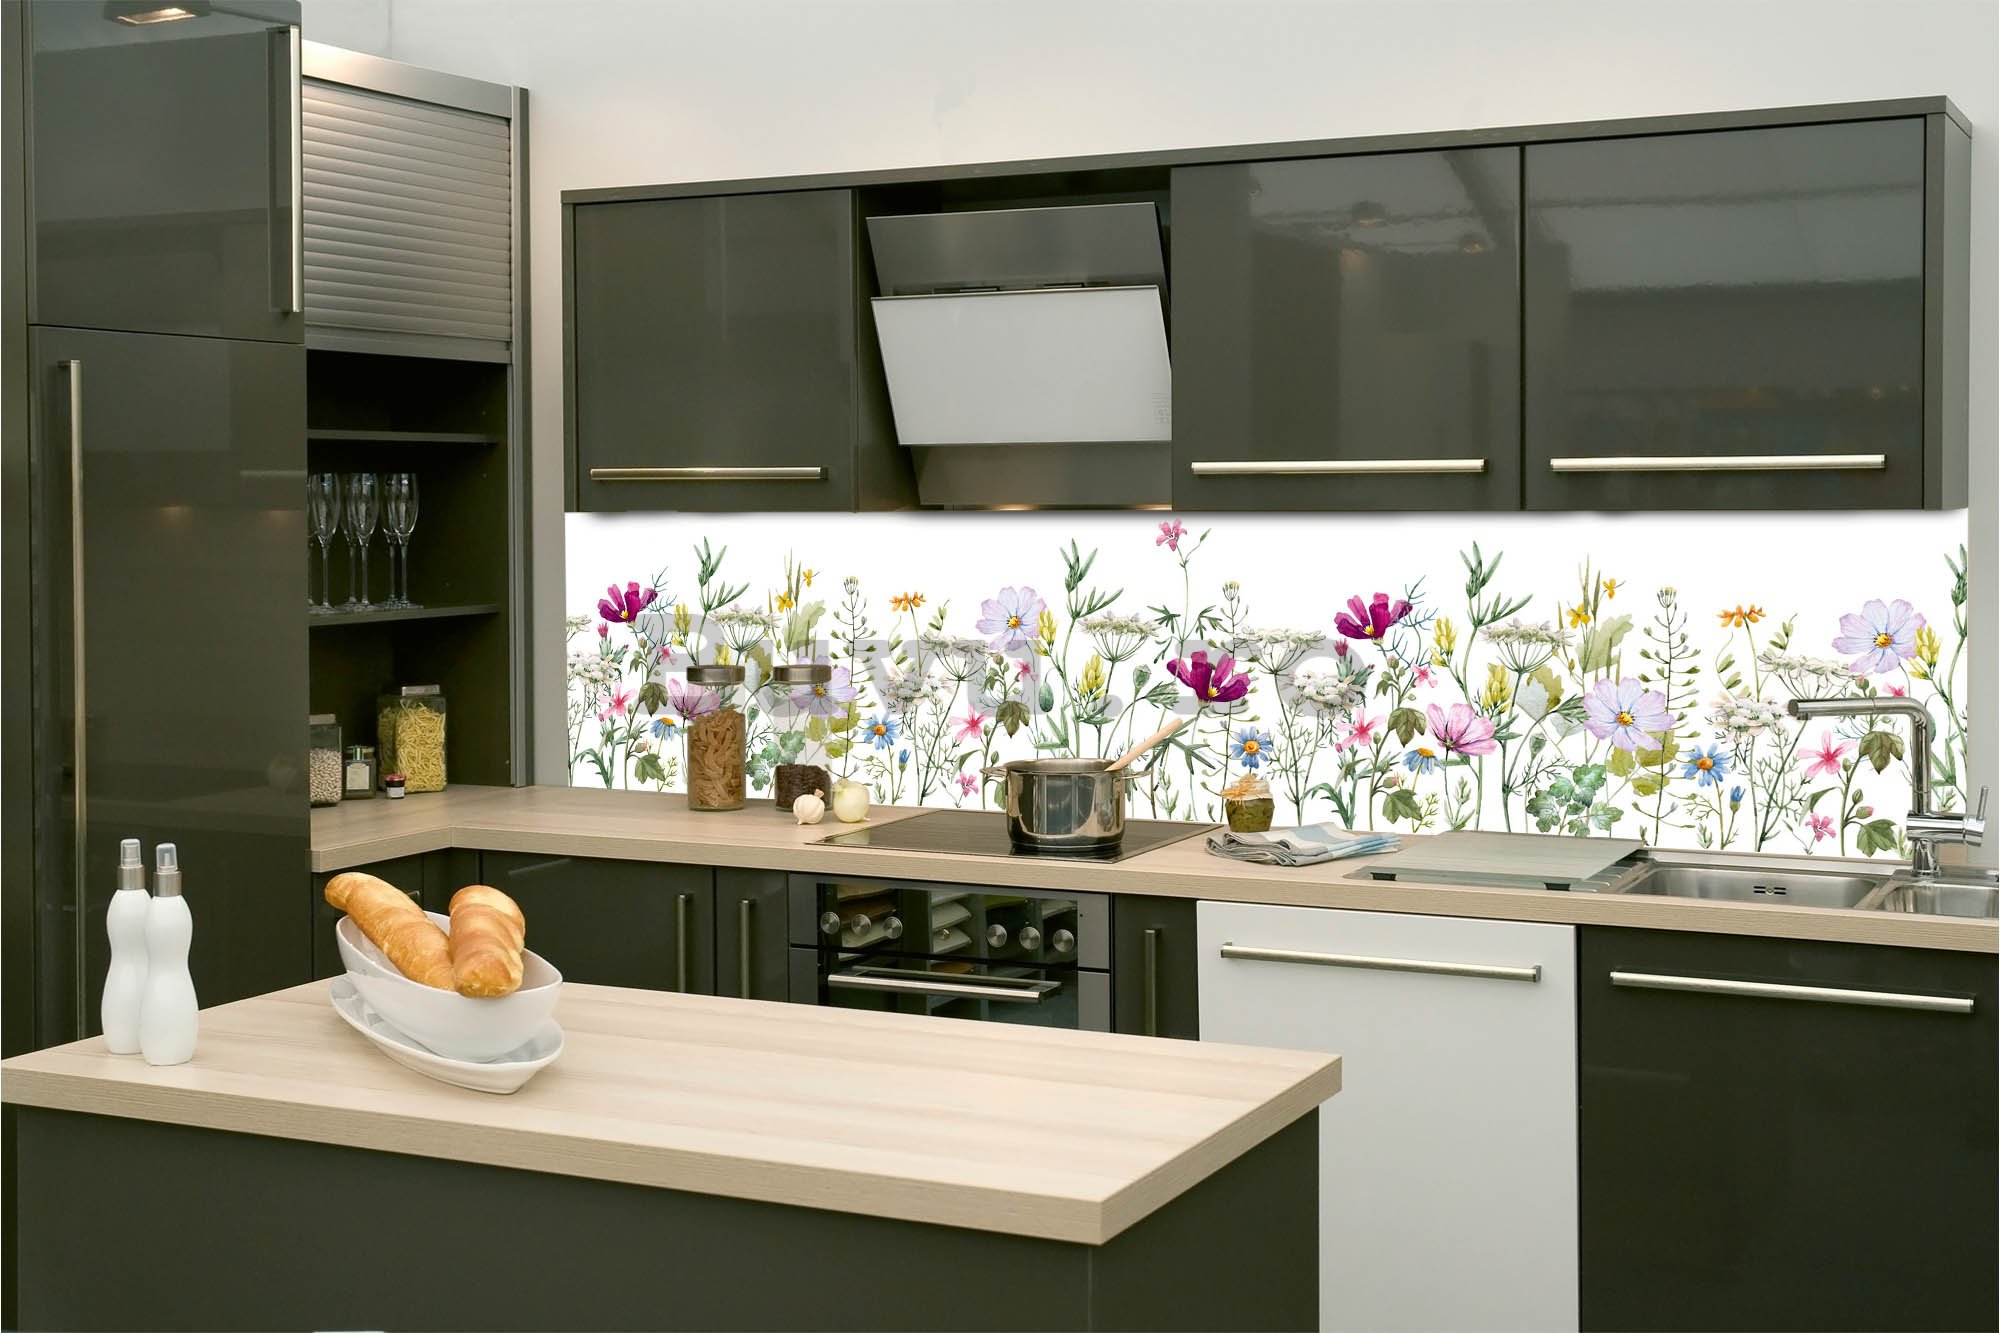 Tapet autoadeziv lavabil pentru bucătărie - Model floral, 260x60 cm